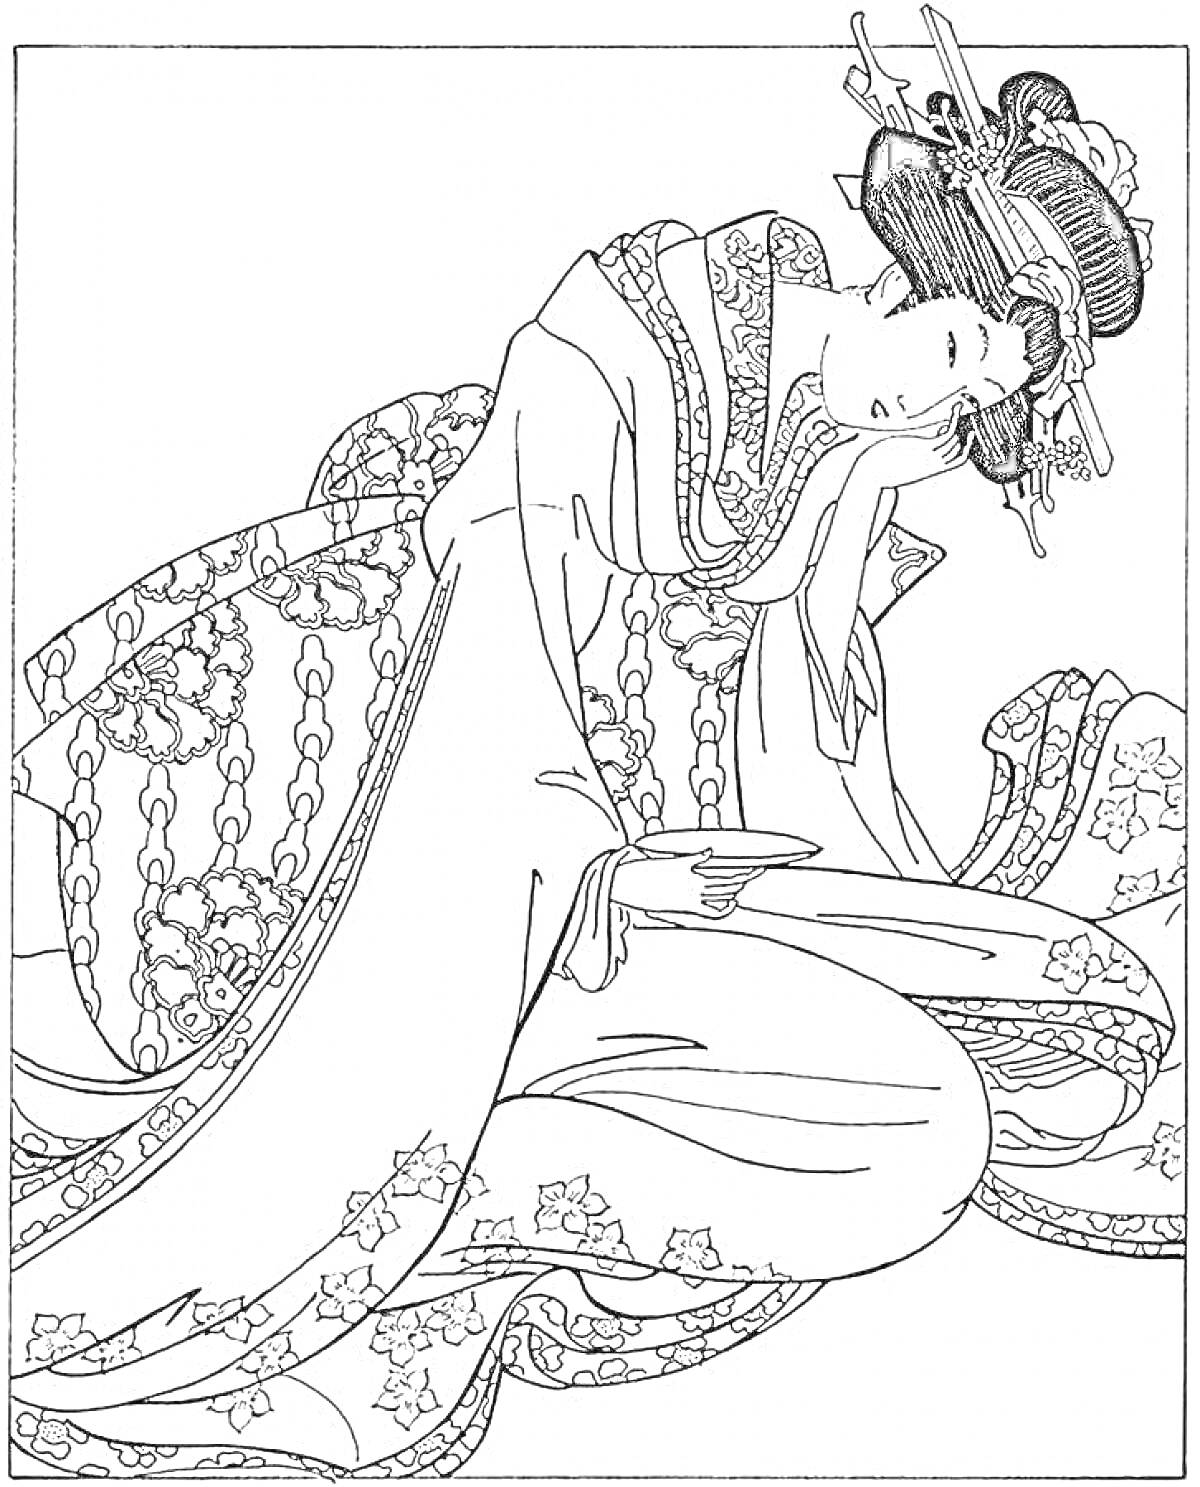 Раскраска Женщина в традиционном китайском наряде с украшенной прической